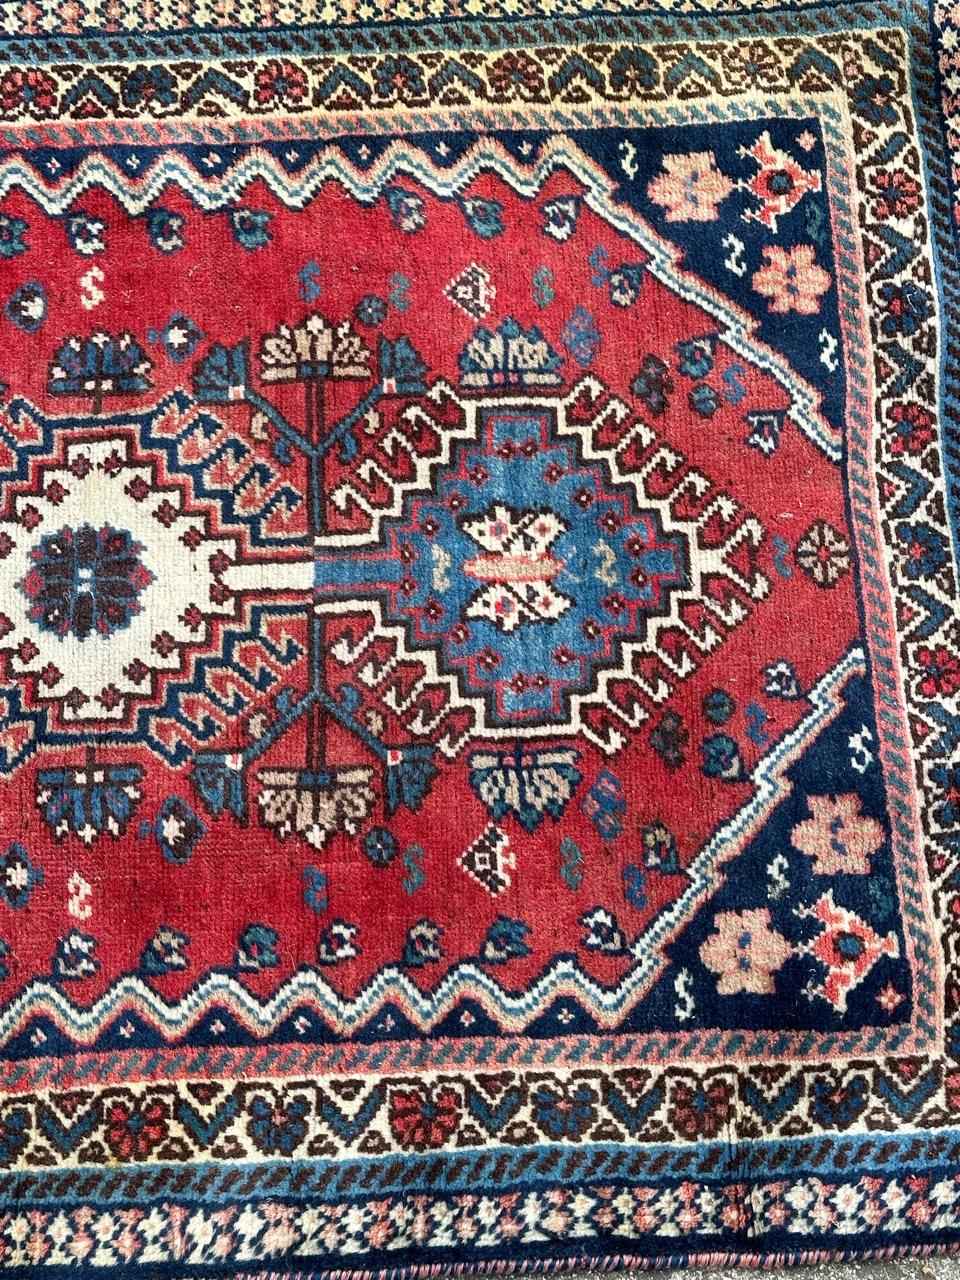 Hübscher Yalameh-Teppich aus der Mitte des Jahrhunderts mit einem schönen geometrischen und Stammesmuster und schönen Farben mit rotem Hintergrund, blau, braun und weiß, komplett handgeknüpft mit Wolle auf Wollfond 

✨✨✨
